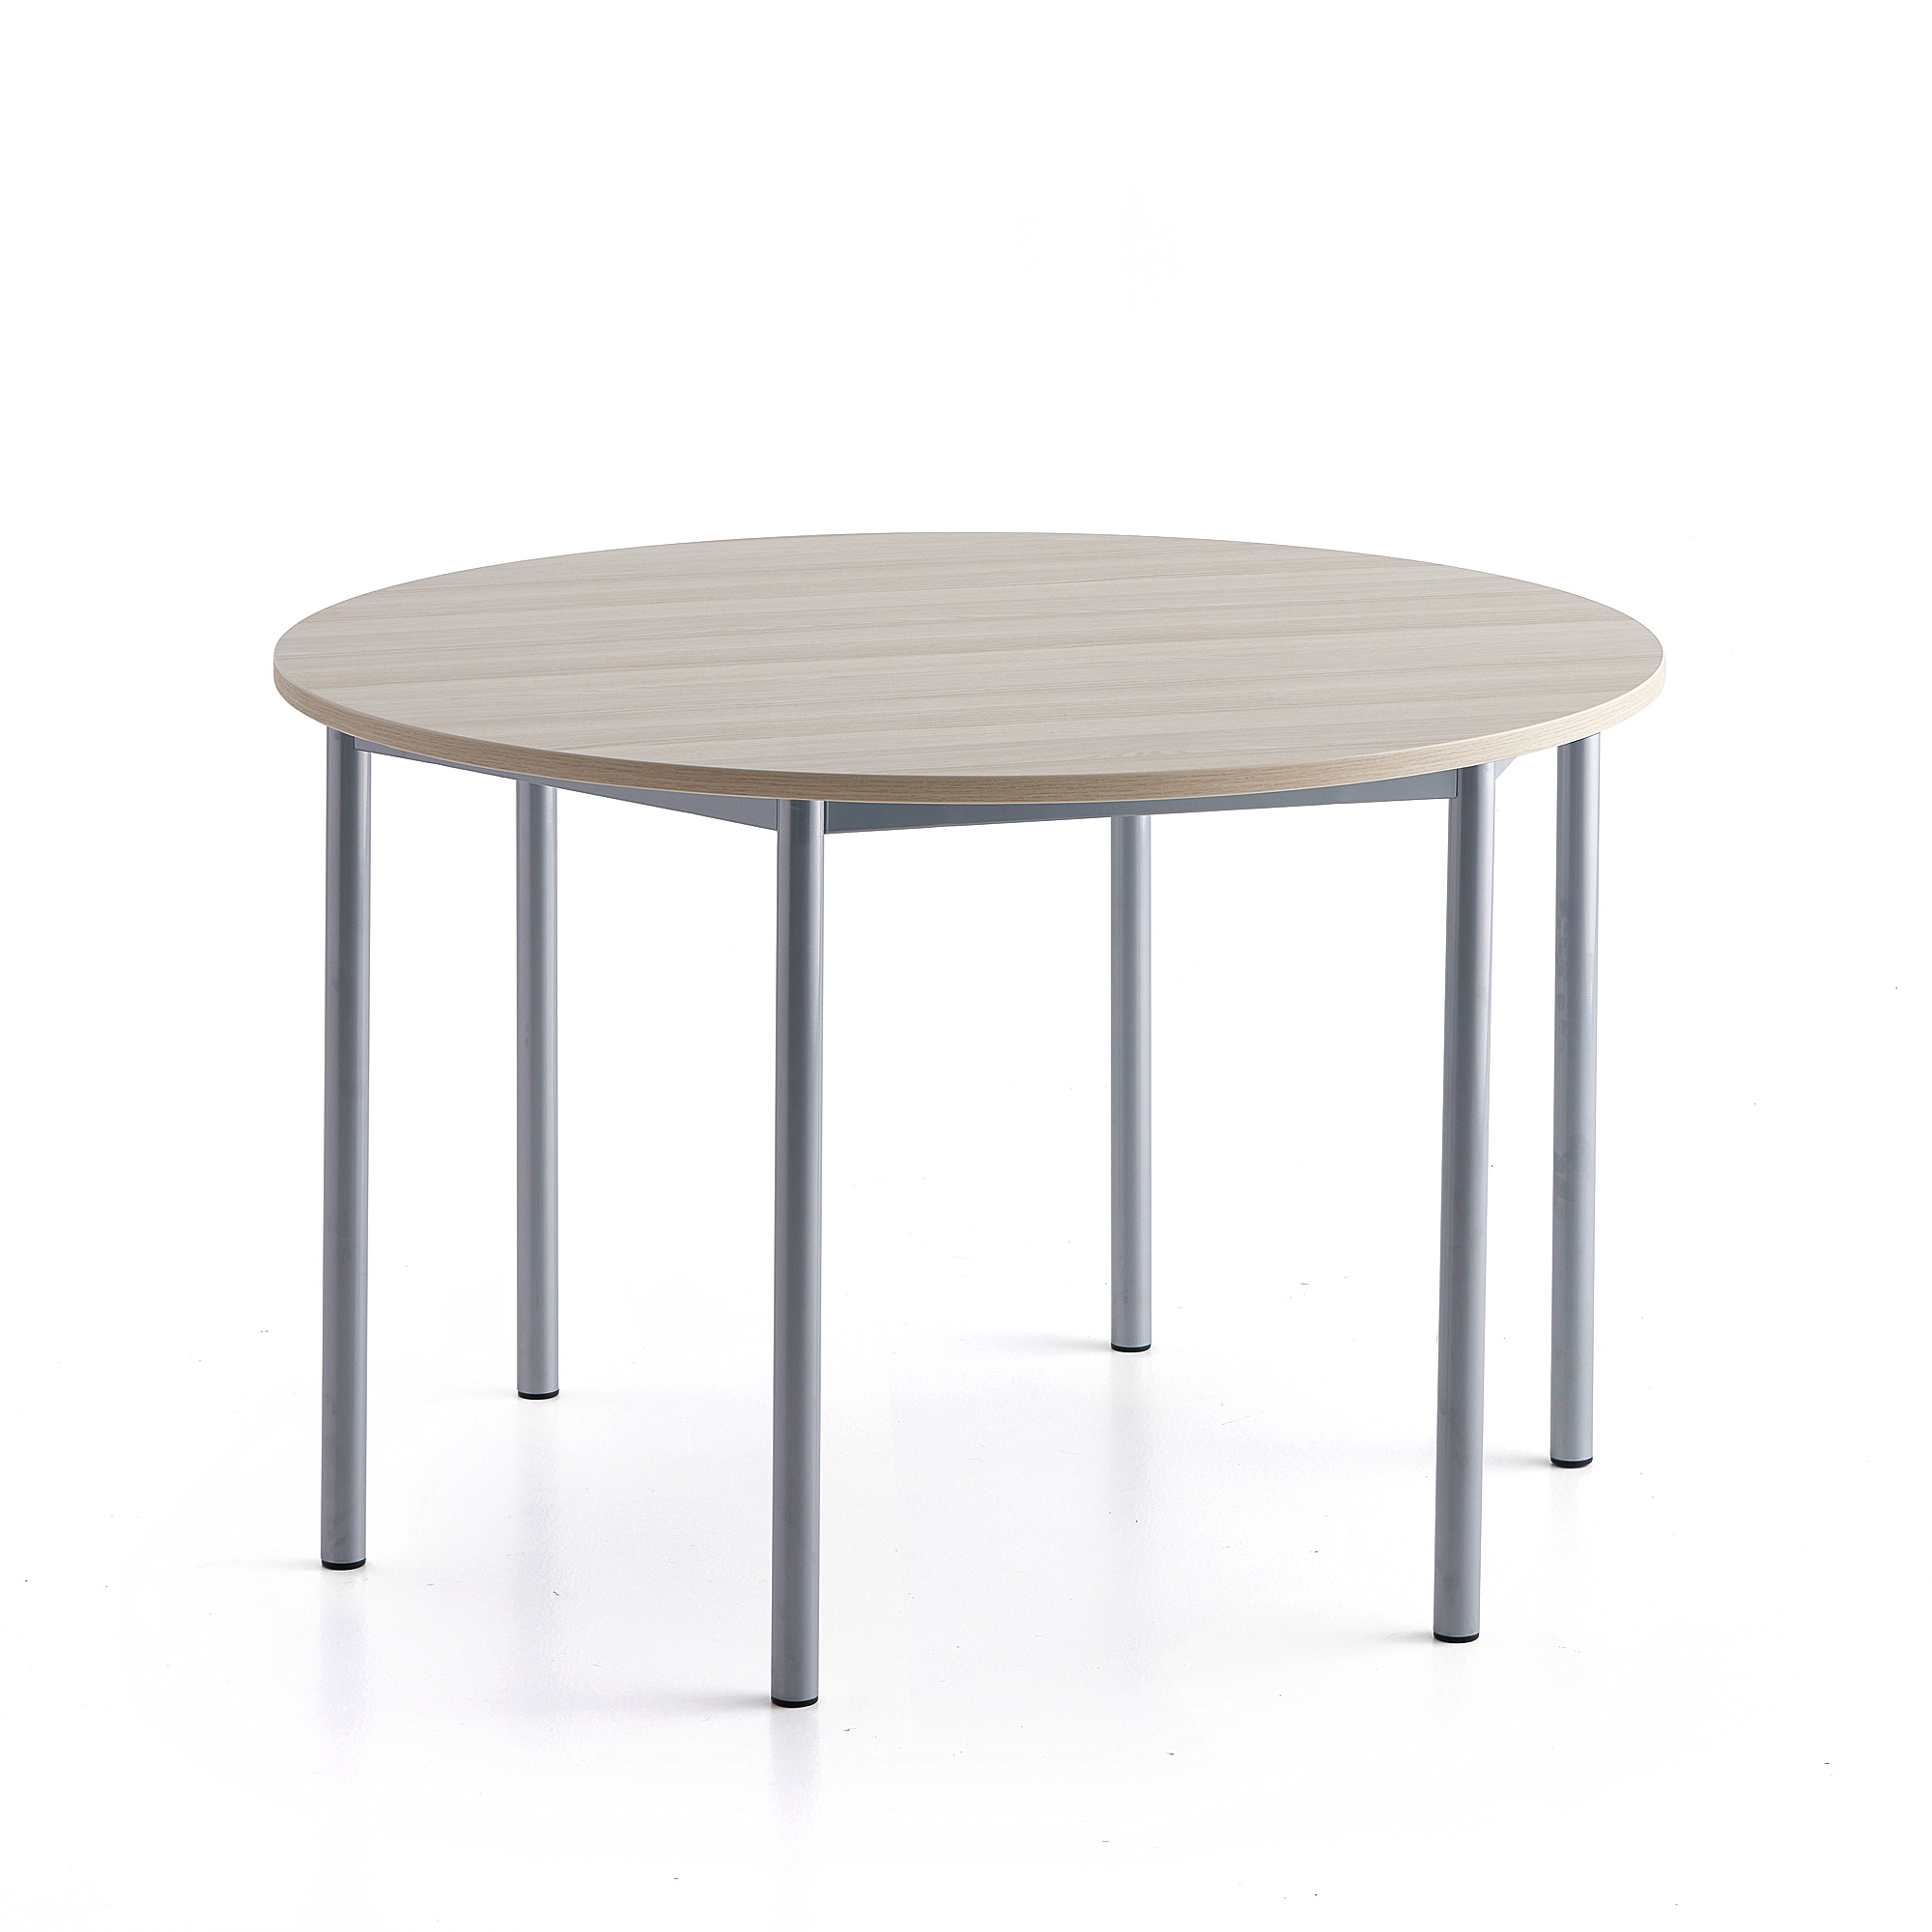 Stůl SONITUS PLUS, Ø1200x760 mm, stříbrné nohy, HPL deska tlumící hluk, jasan